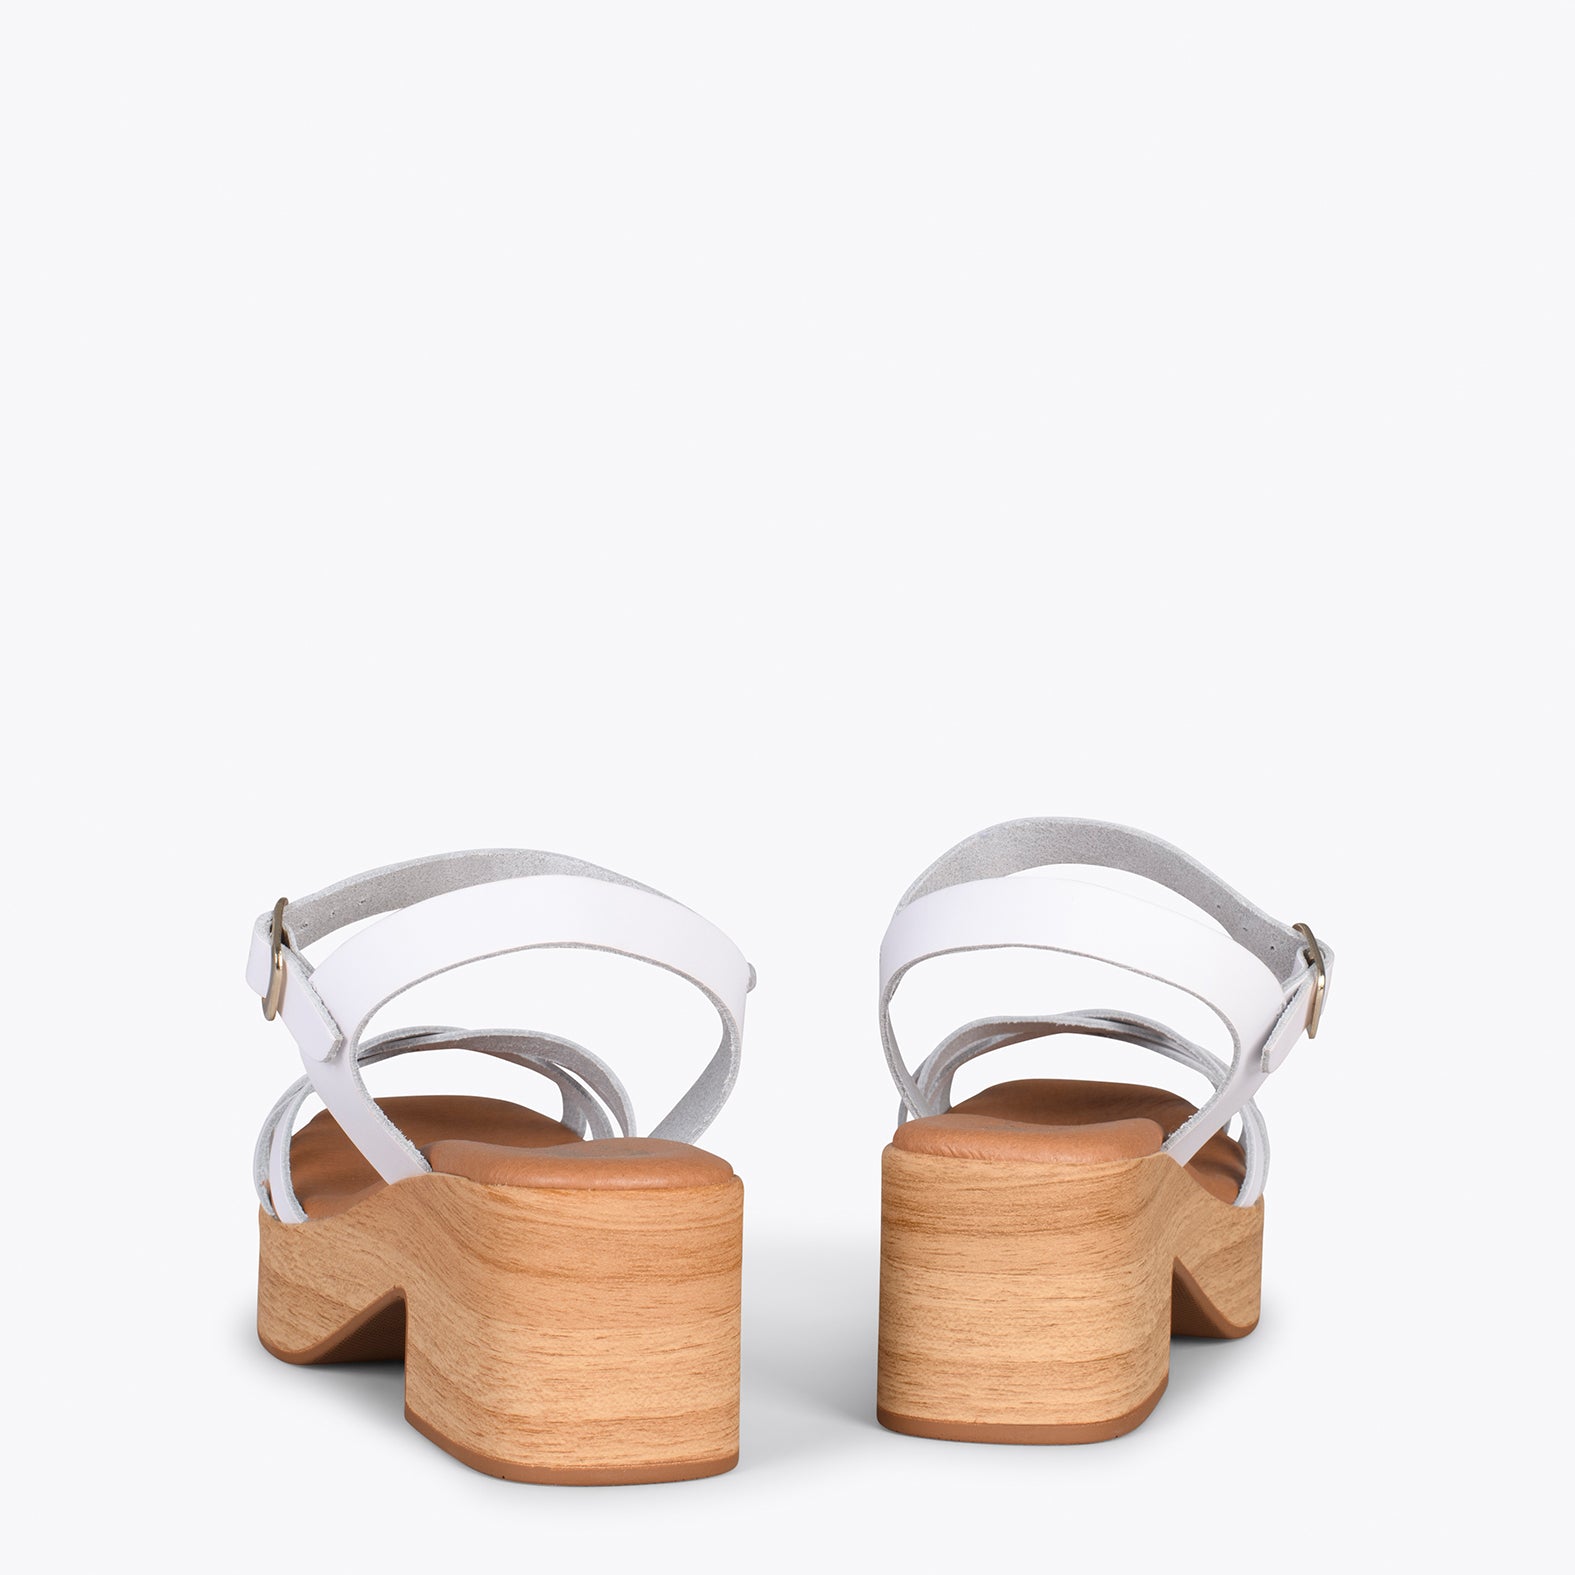 WOOD – Sandalias imitación madera con tiras BLANCO